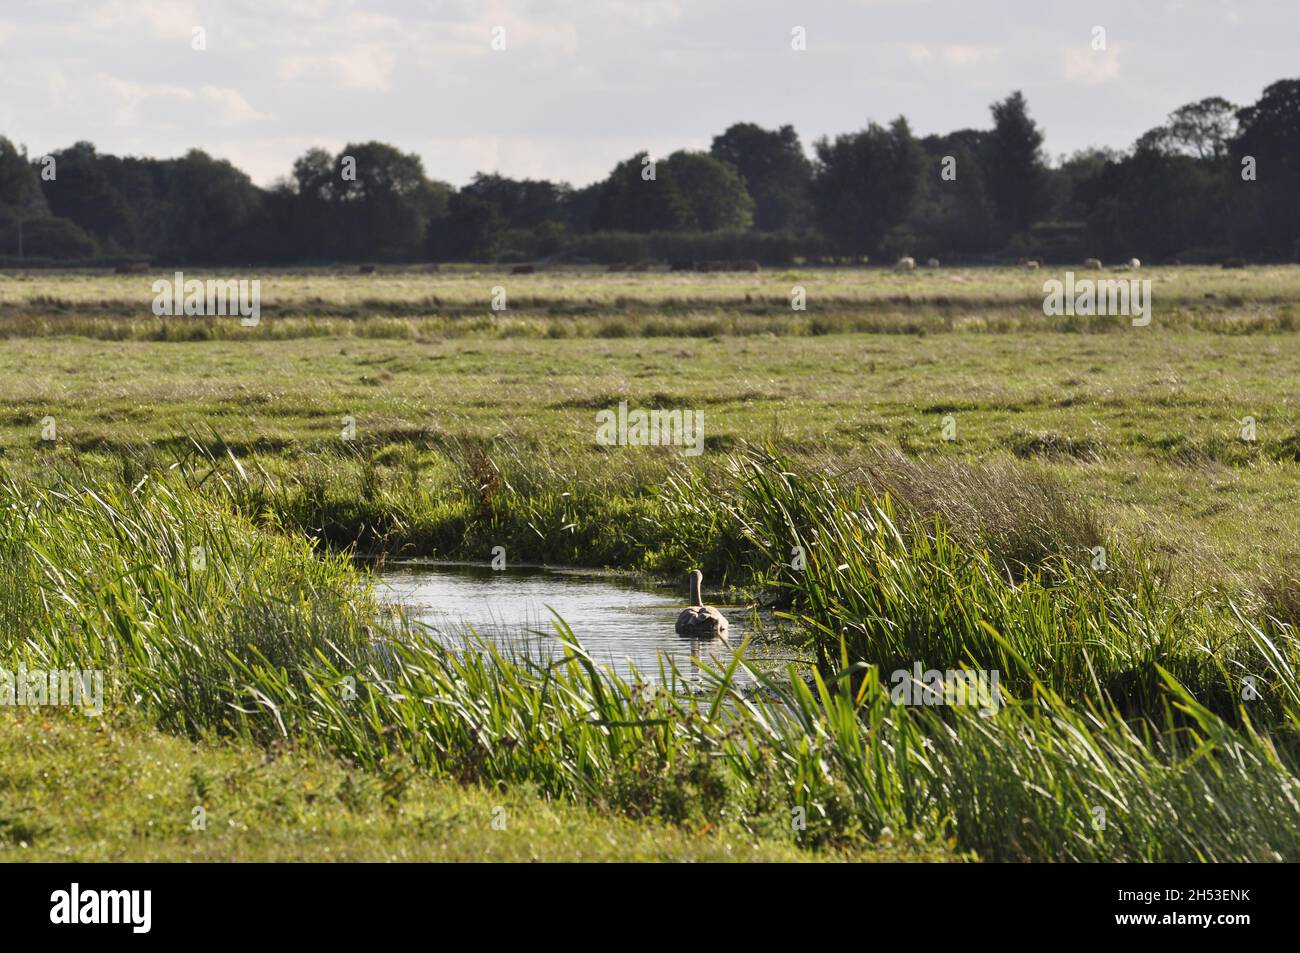 On Halvergate marshes, Norfolk, England, UK. Stock Photo